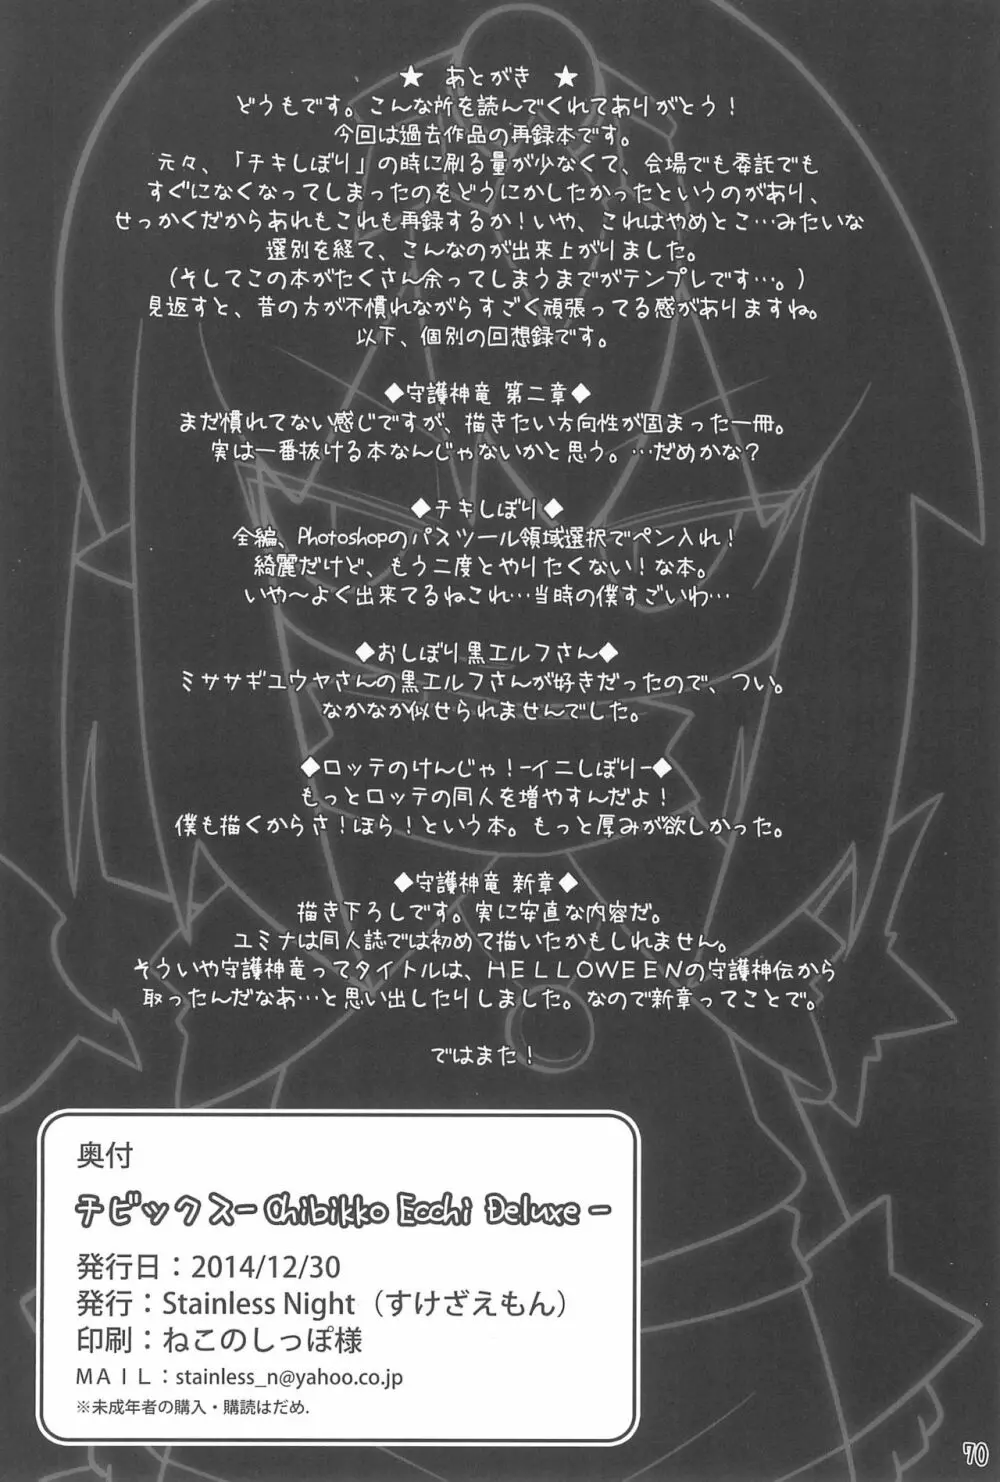 チビックス ‐Chibikko ecchi Deluxe- Stainless Night 過去作品集 70ページ